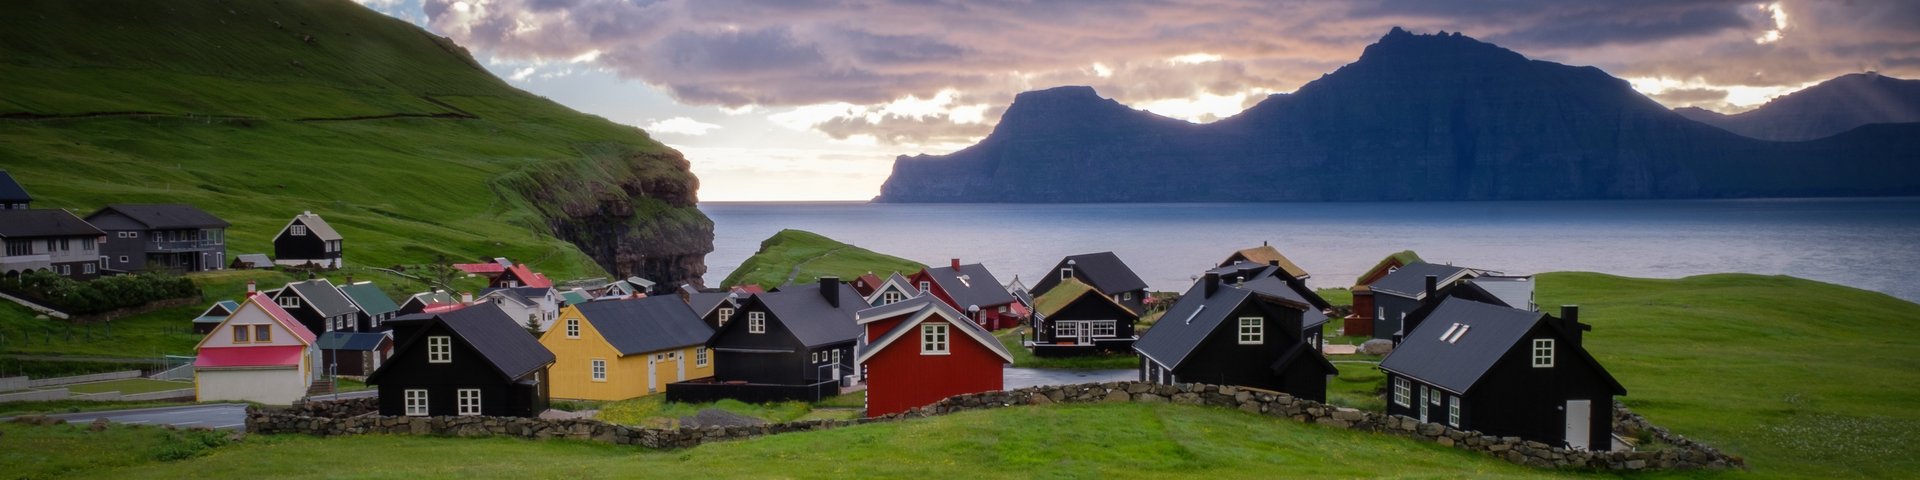 Das Dorf Gjogv auf den Färöer Inseln und im Hintergrund das Meer und Berge